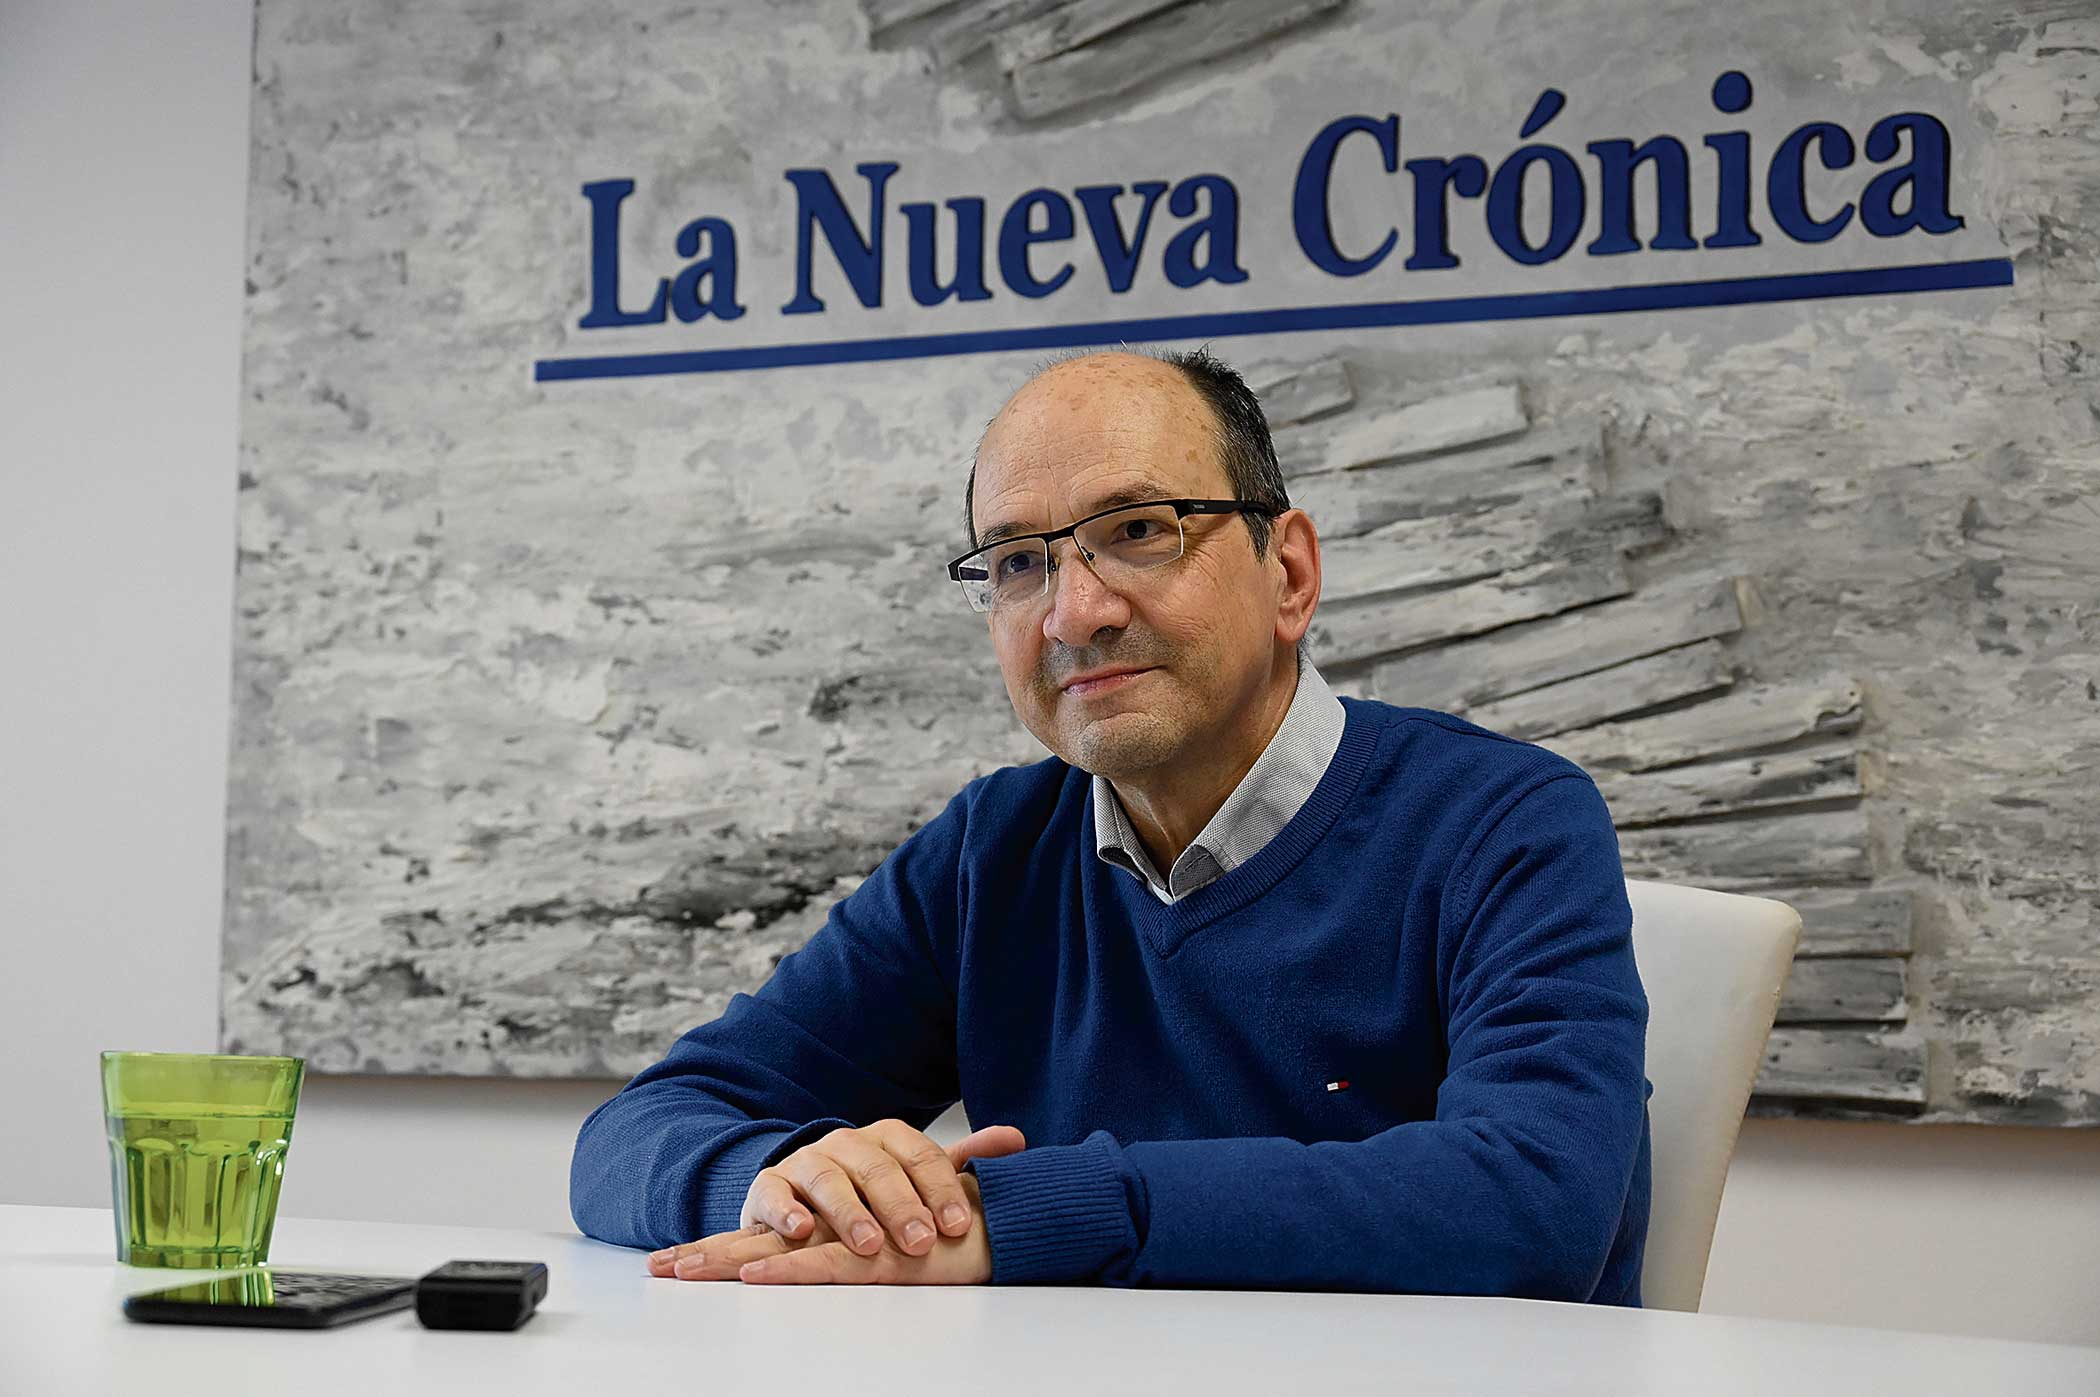 El catedrático de Derecho, Juan José Fernández, candidato a rector de la Universidad de León. | SAÚL ARÉN